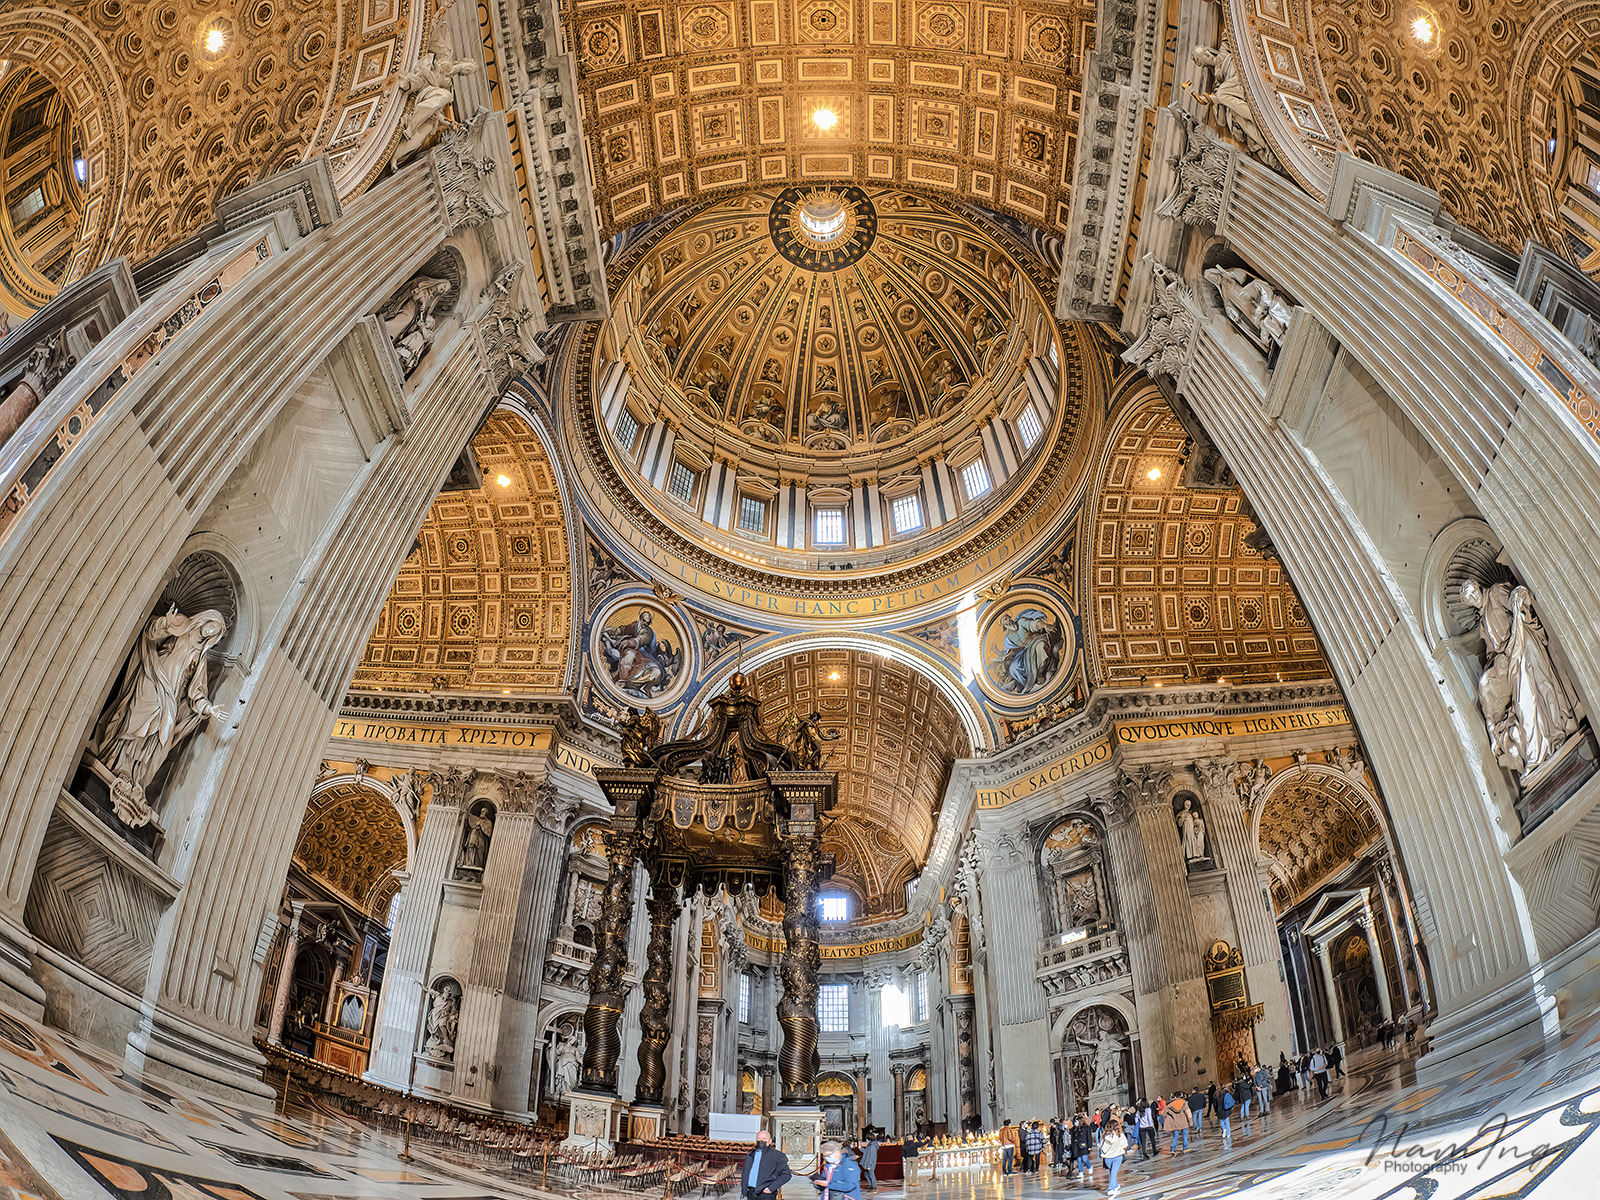 St. Peter’s Basilica in Vatican